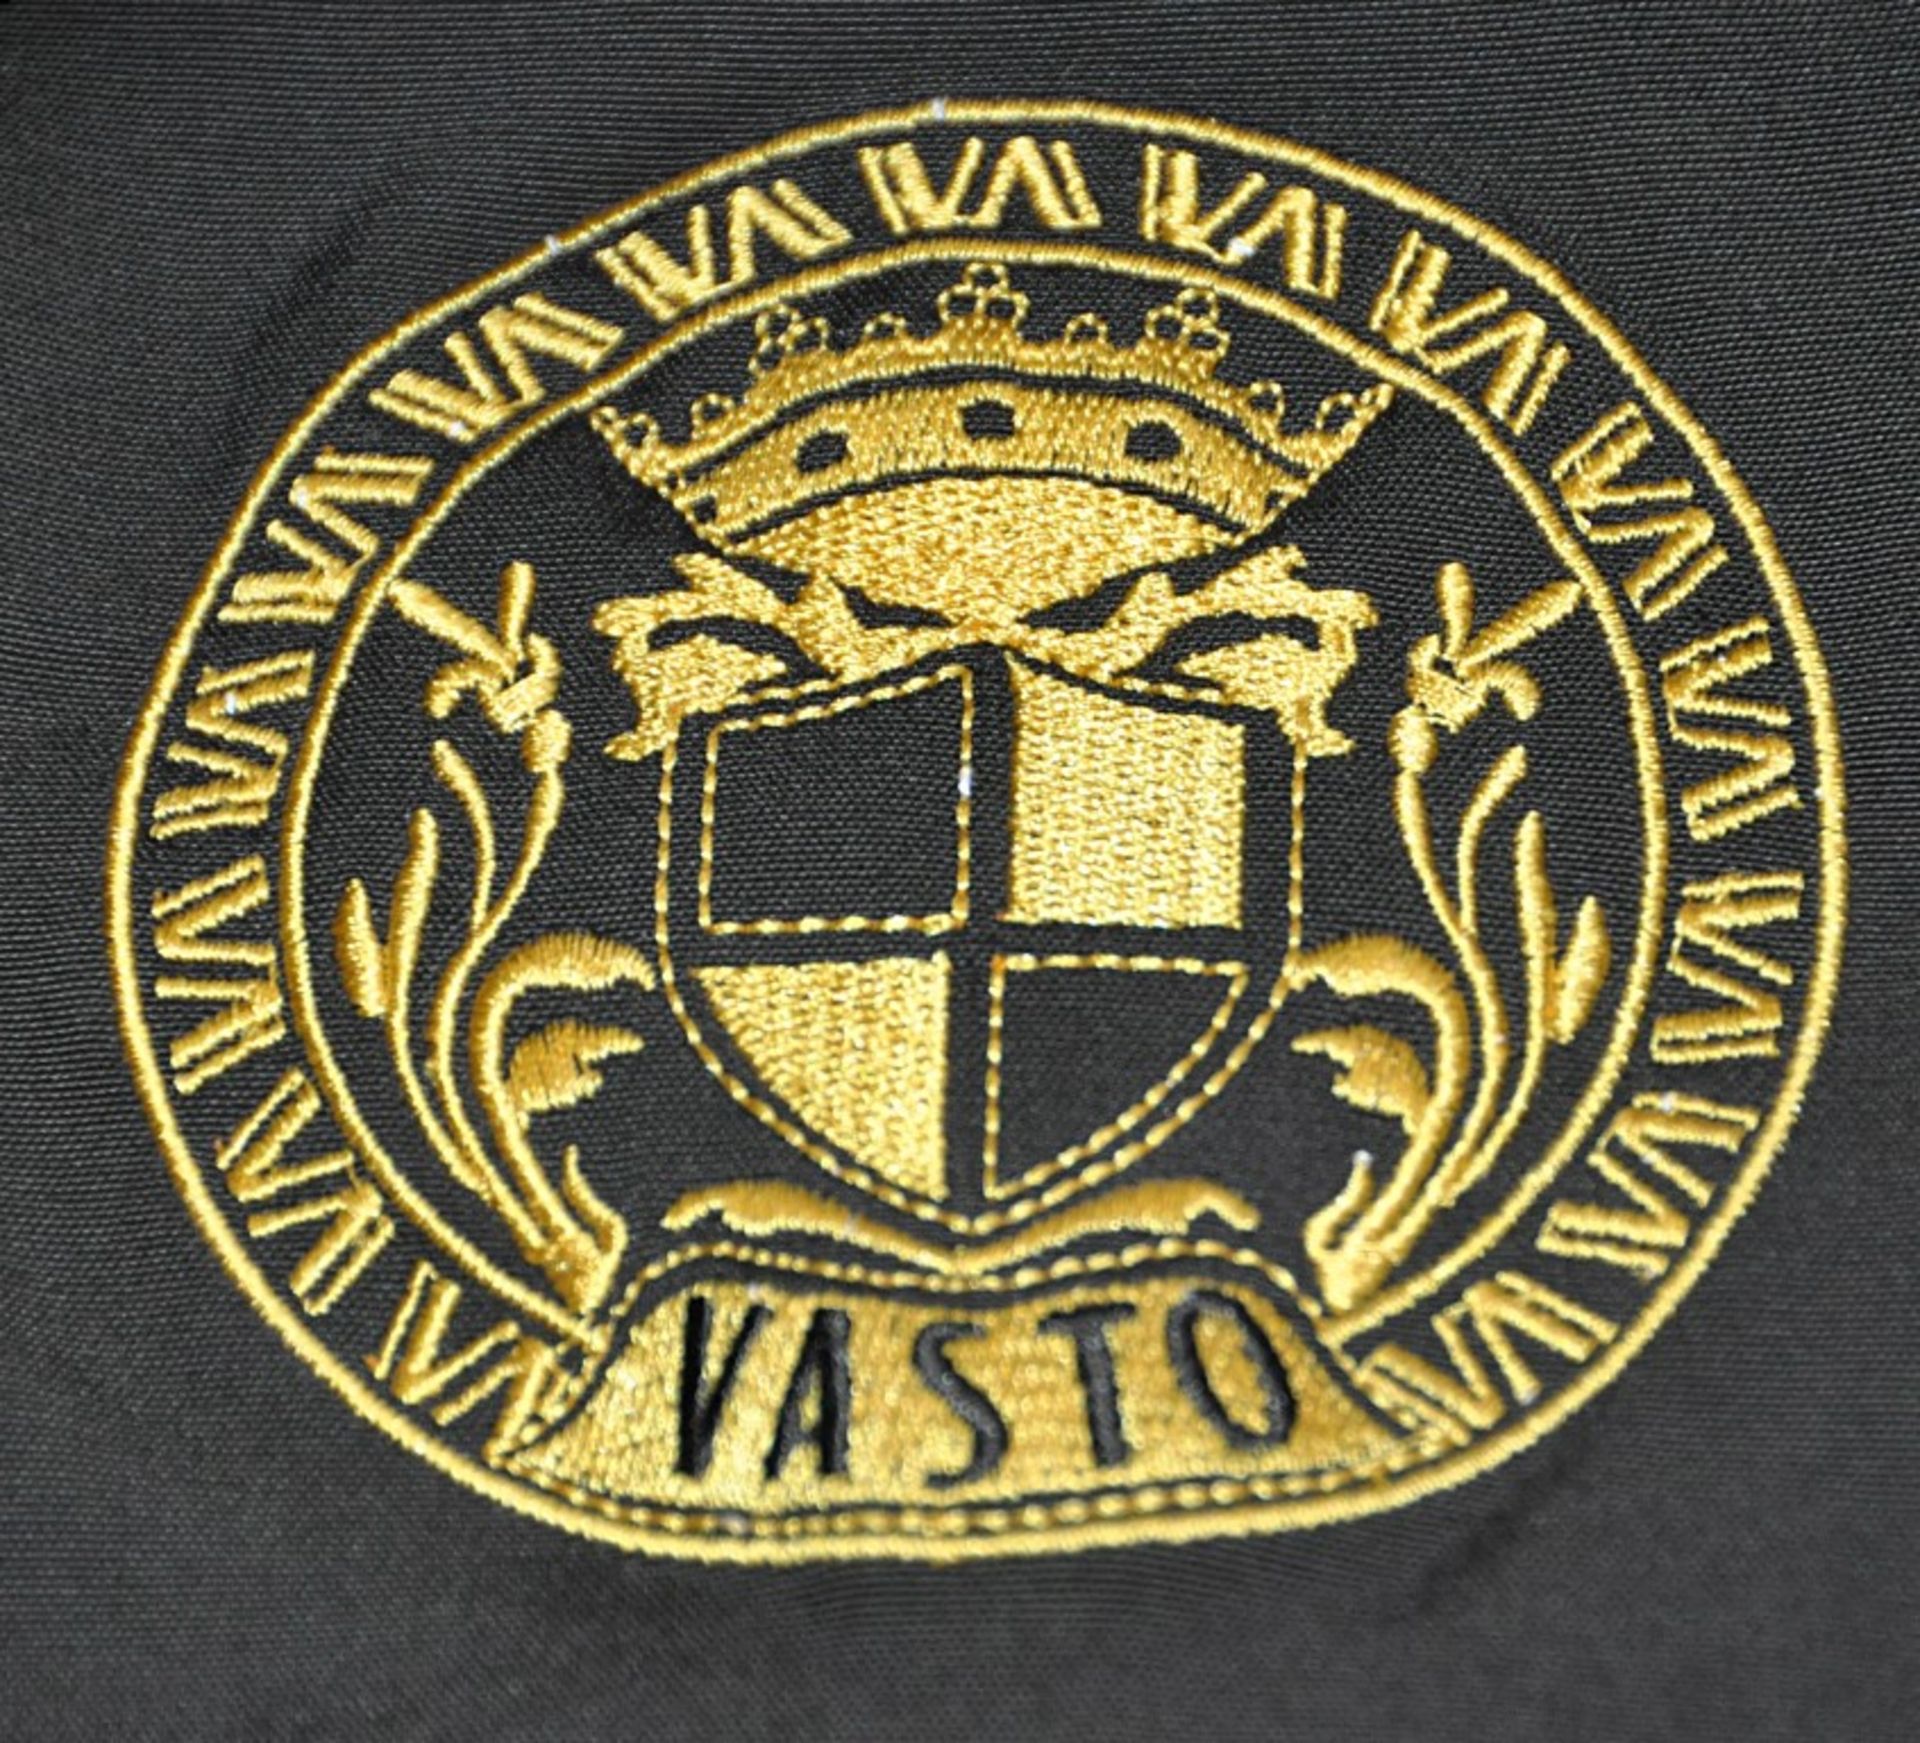 1 x Men's Long Sleeve Jacket By International Luxury Brand "Vasto" (BAS7101) – Size: Large - Colour: - Image 6 of 9